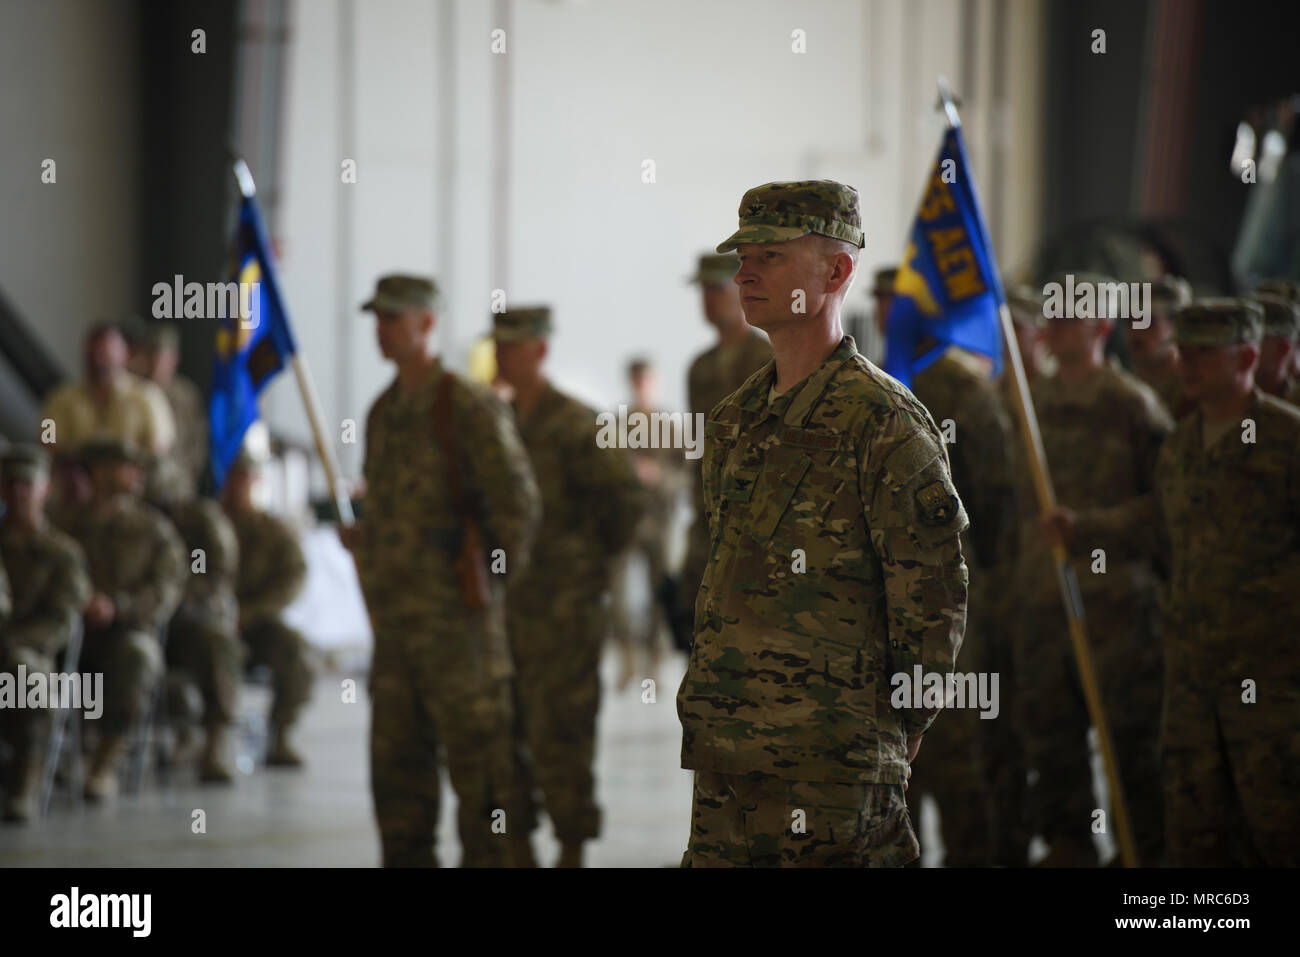 El Coronel William Burks, el 455a ala expedicionaria aérea vice comandante, está en formación durante una ceremonia de cambio de mando en el aeródromo de Bagram, Afganistán, 3 de junio de 2017. Aeródromo de Bagram da la bienvenida al nuevo comandante, Brig. Gen. Craig Baker. (Ee.Uu. Foto de la fuerza aérea por el Sargento. Benjamin Gonsier) Foto de stock